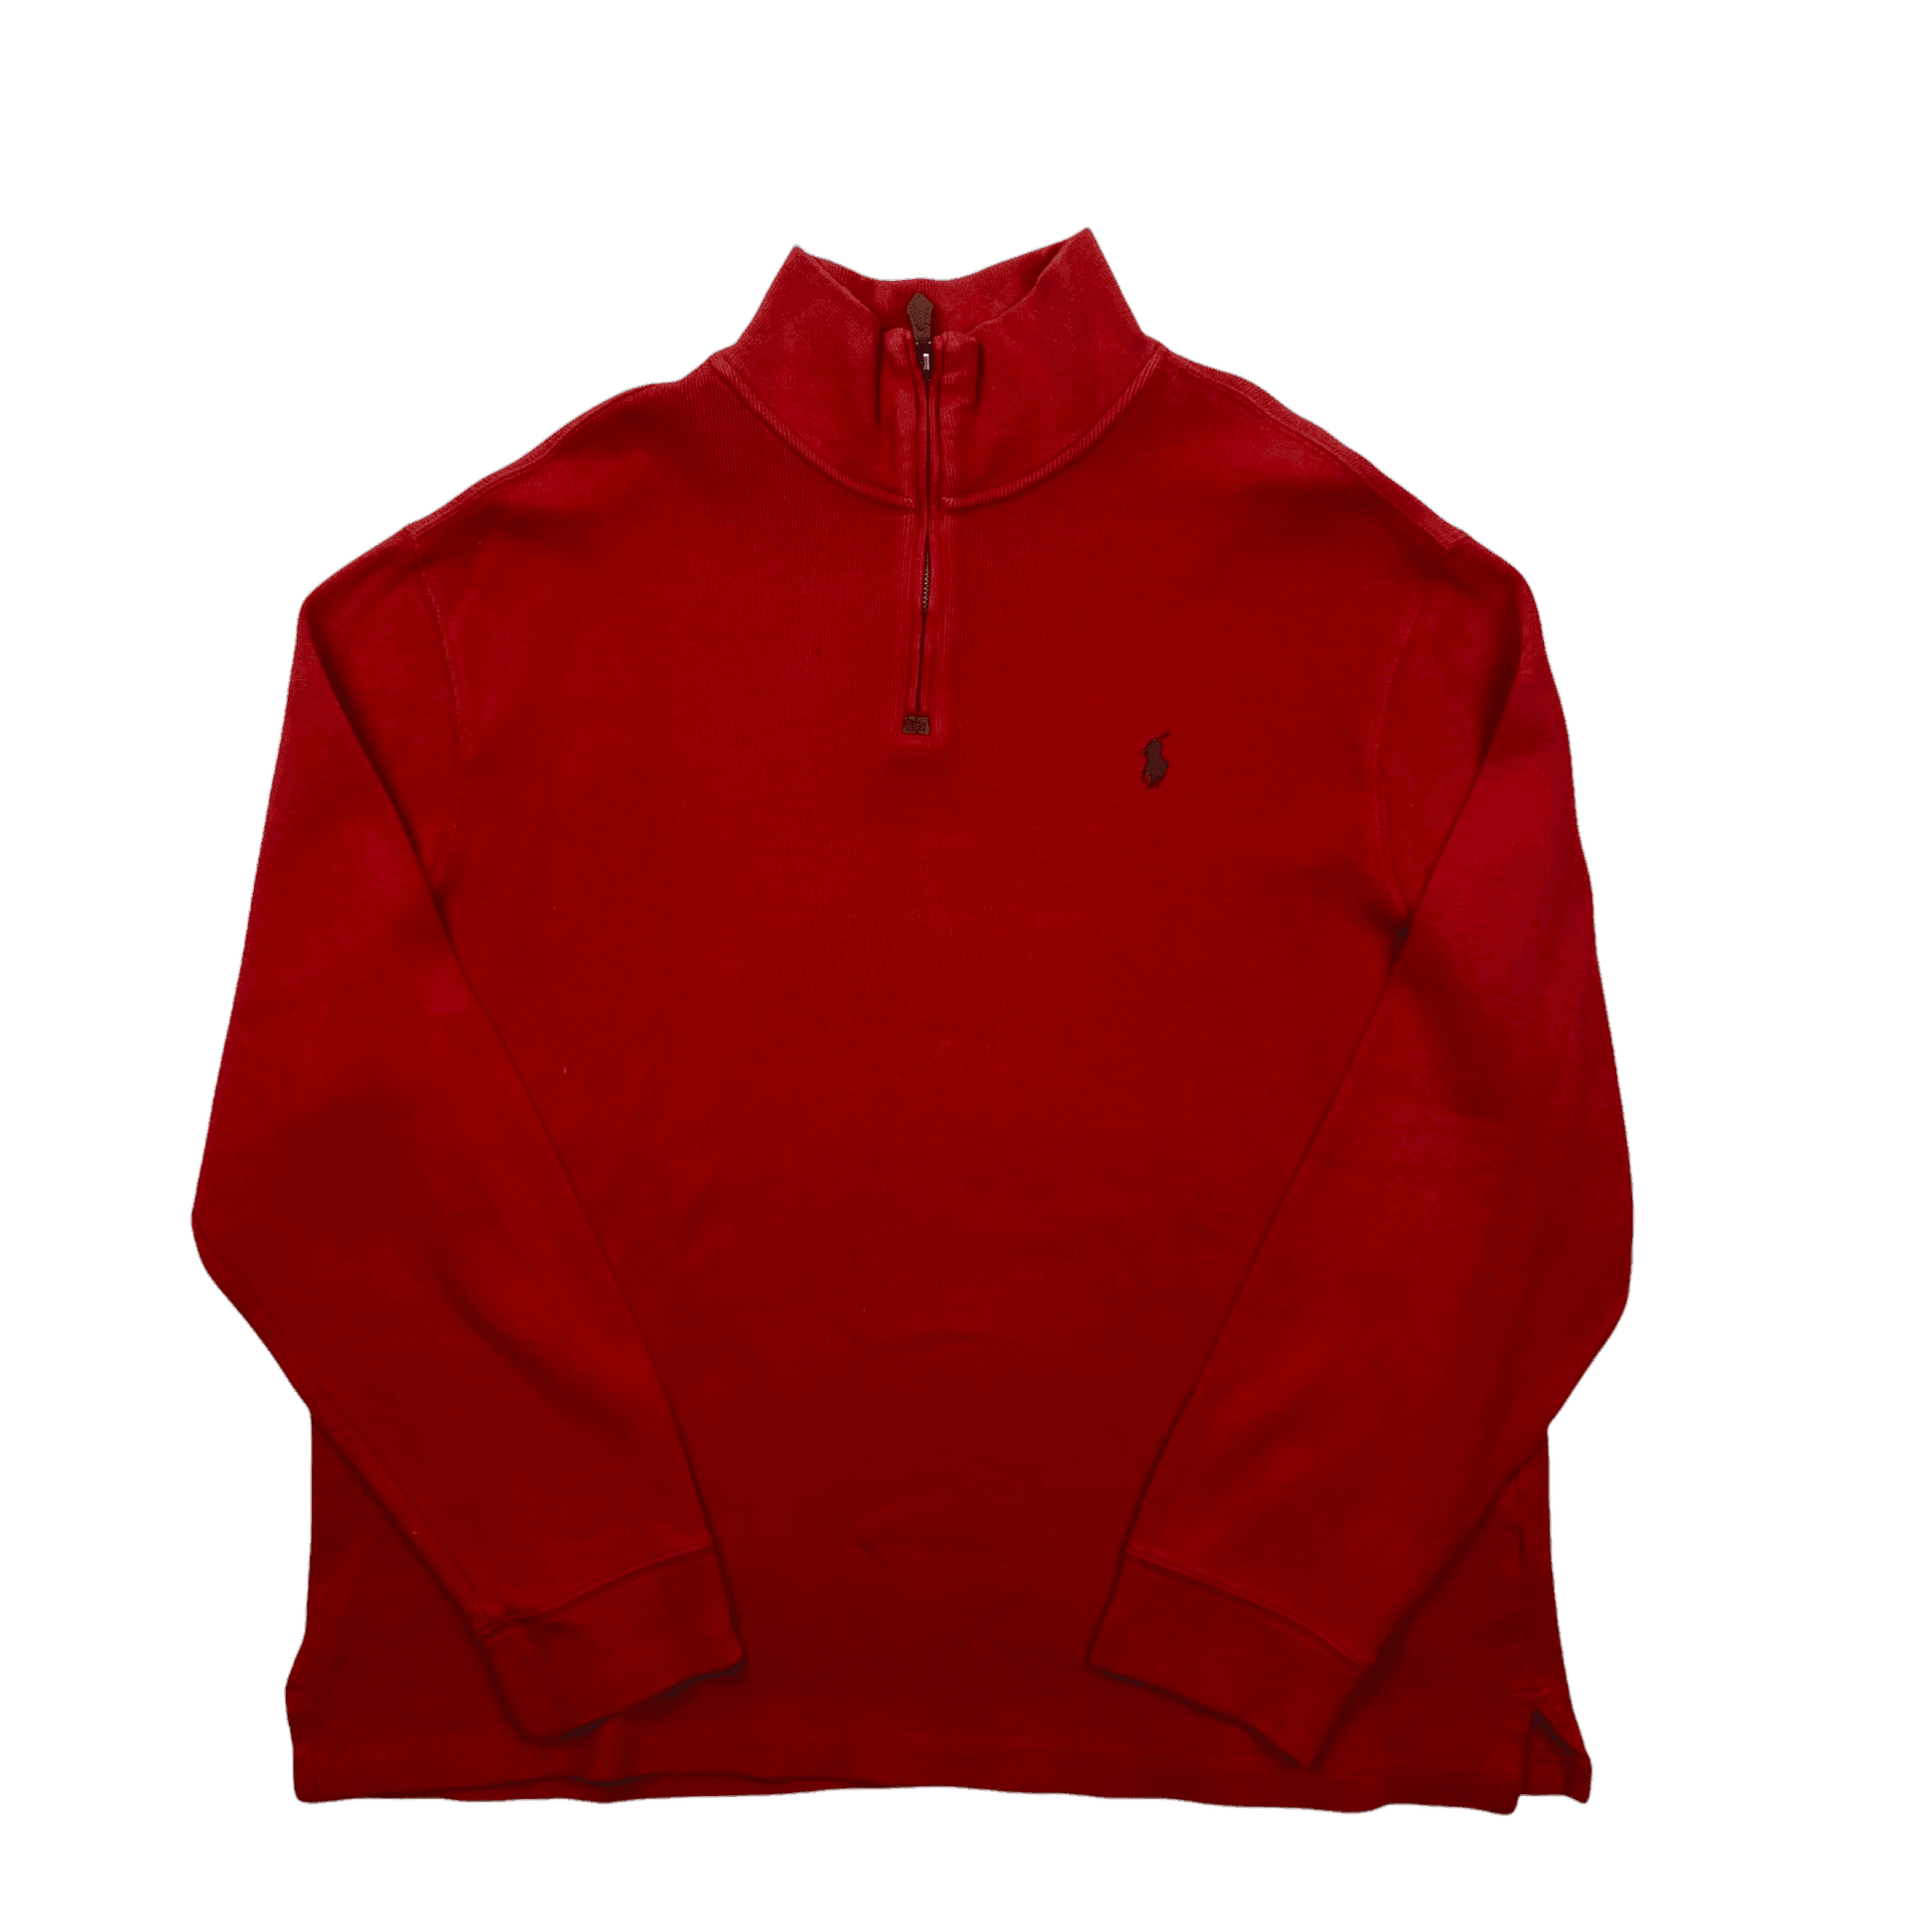 Vintage 90s Red Polo Ralph Lauren Quarter Zip Sweatshirt - Extra Large